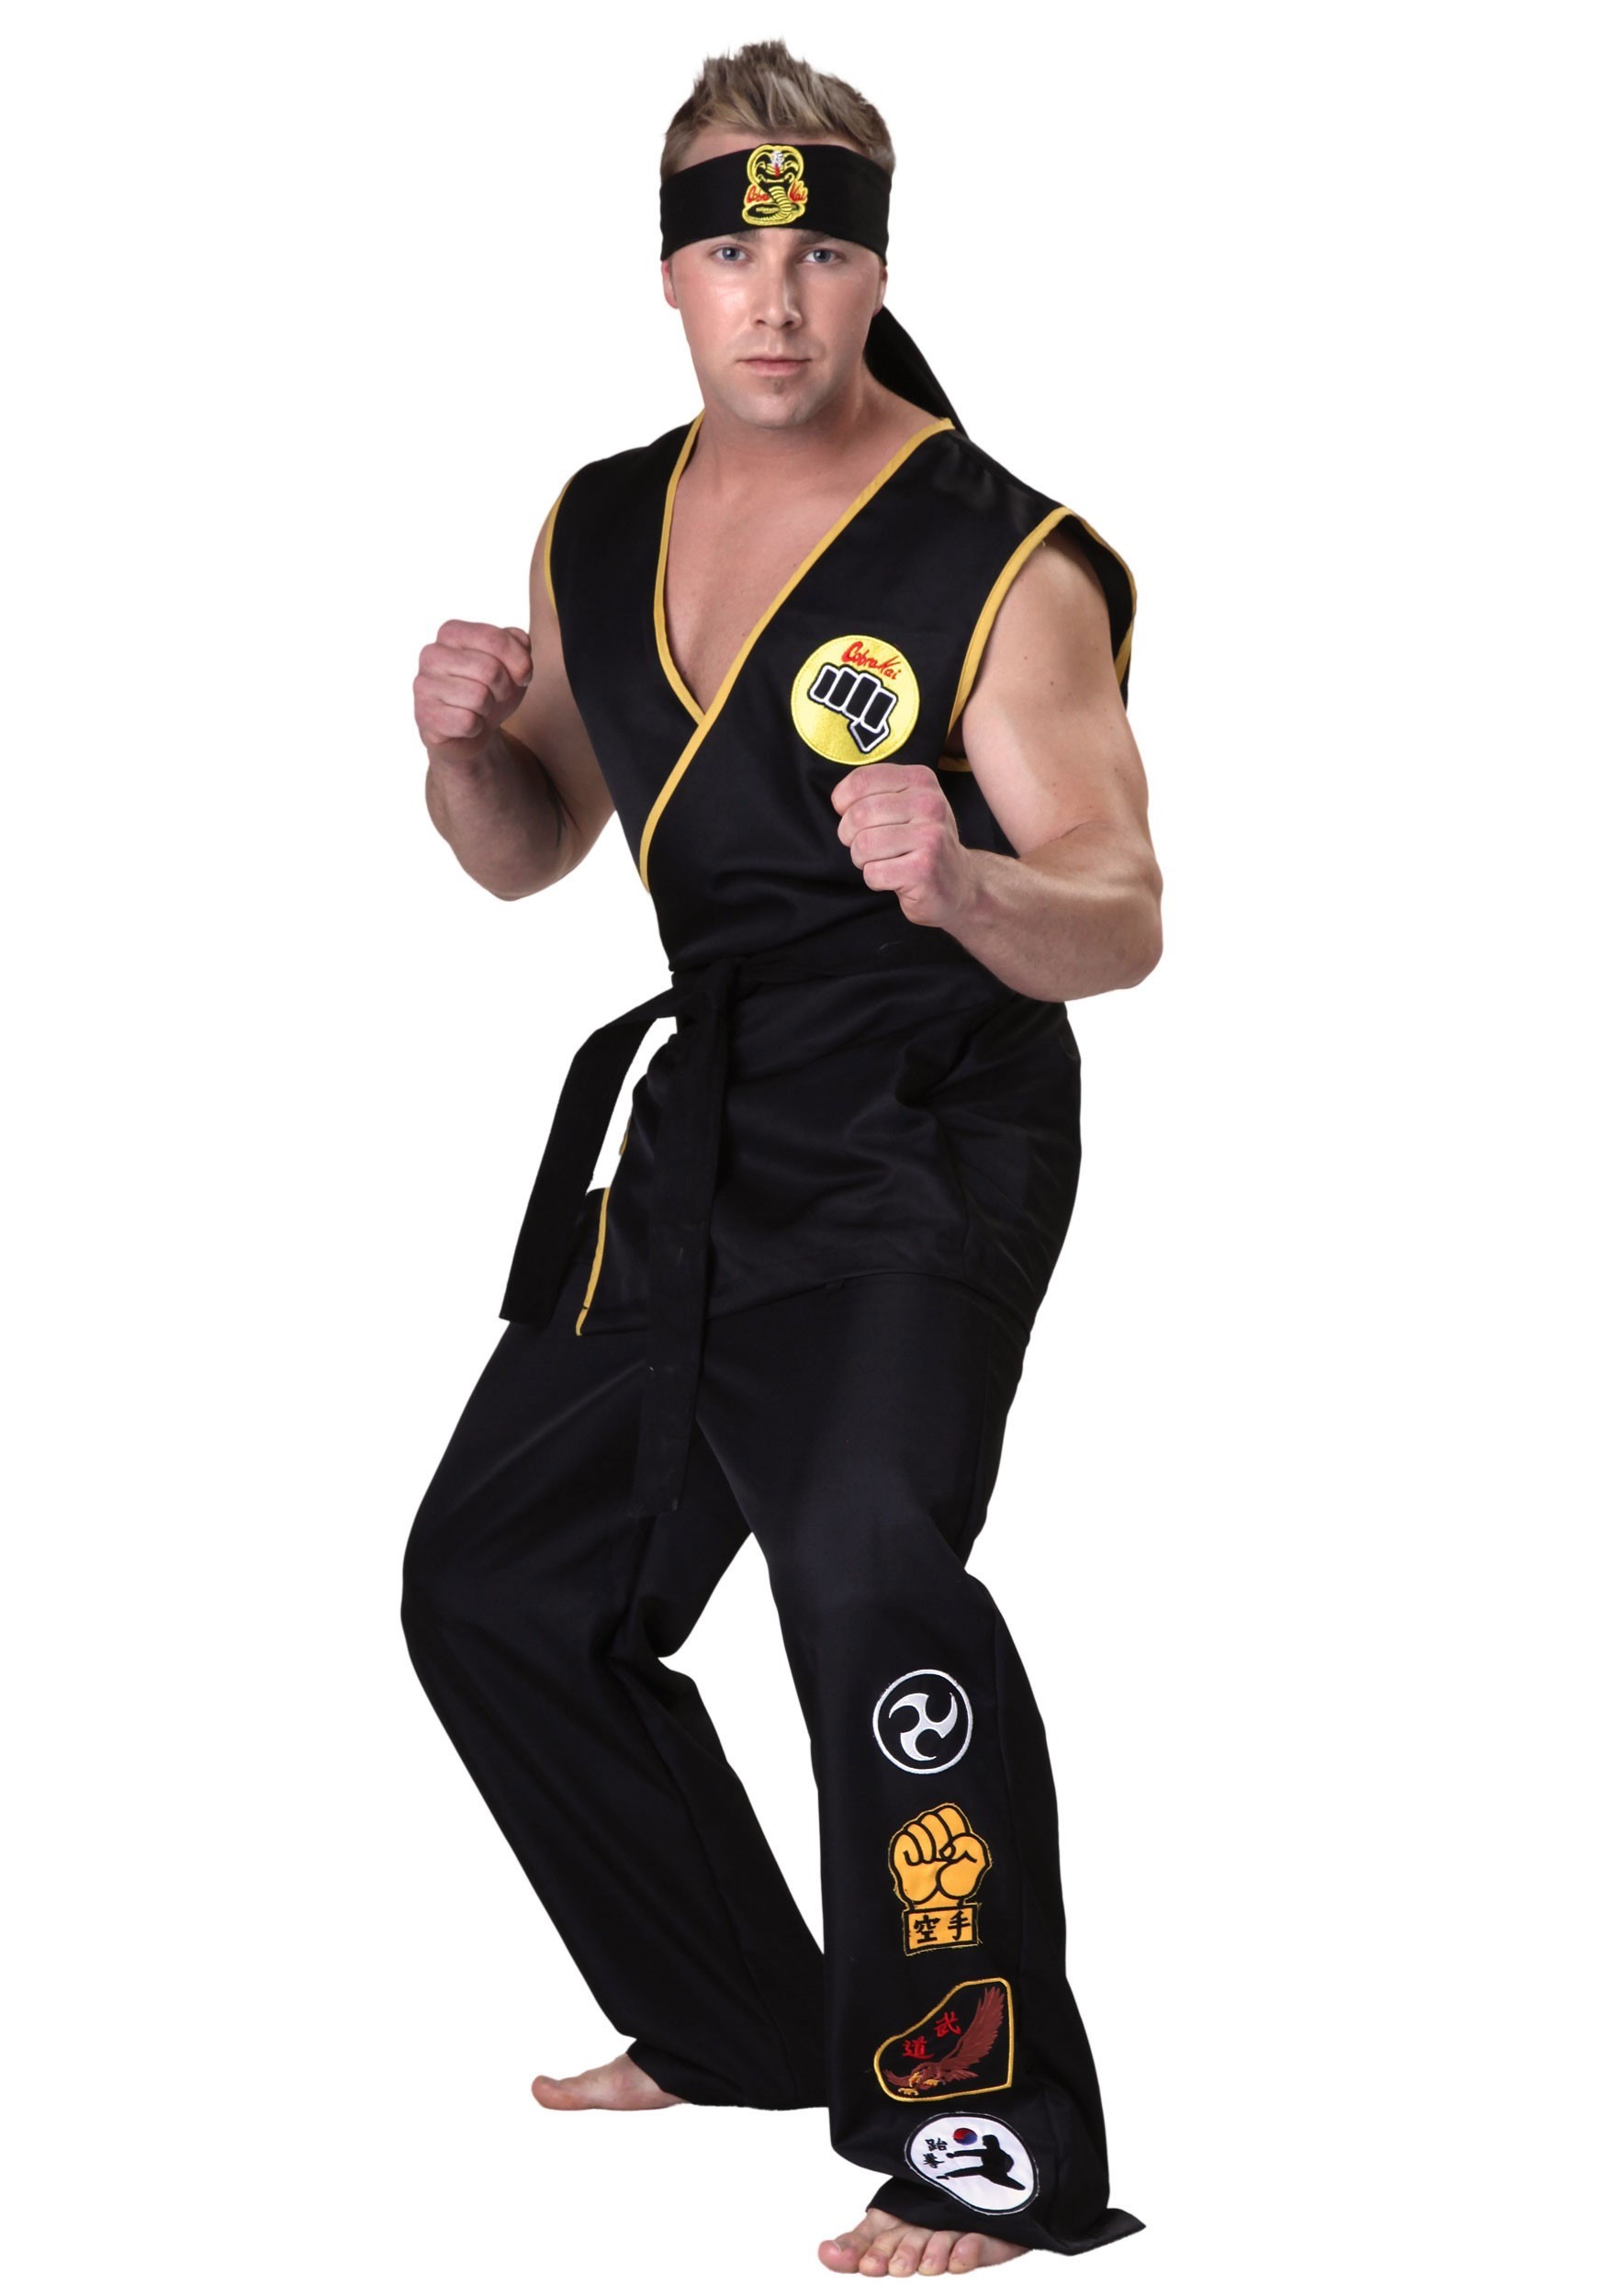 Karate Kid Cobra Kai Adult Costume